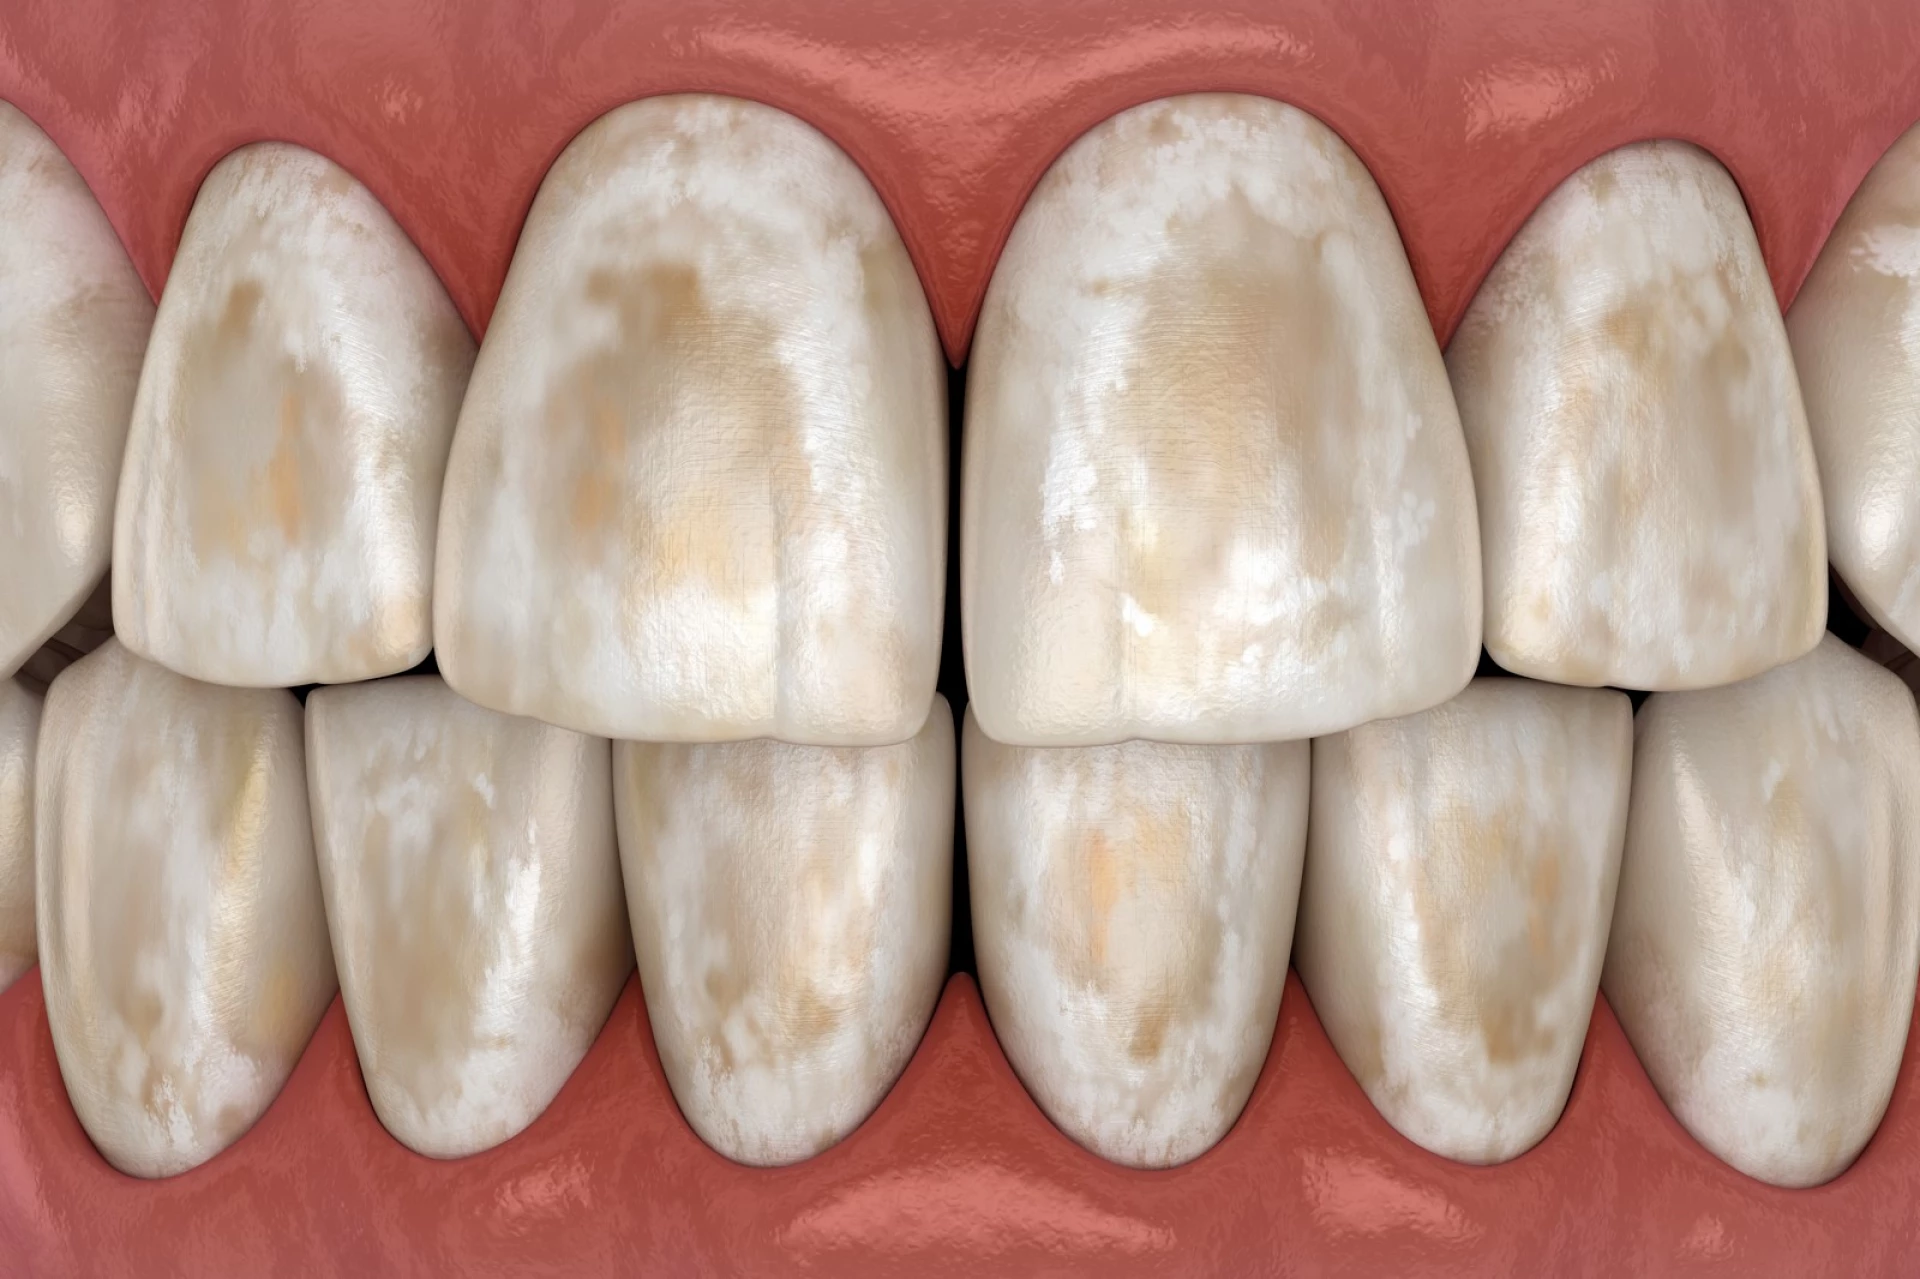 Demineralizarea dentară